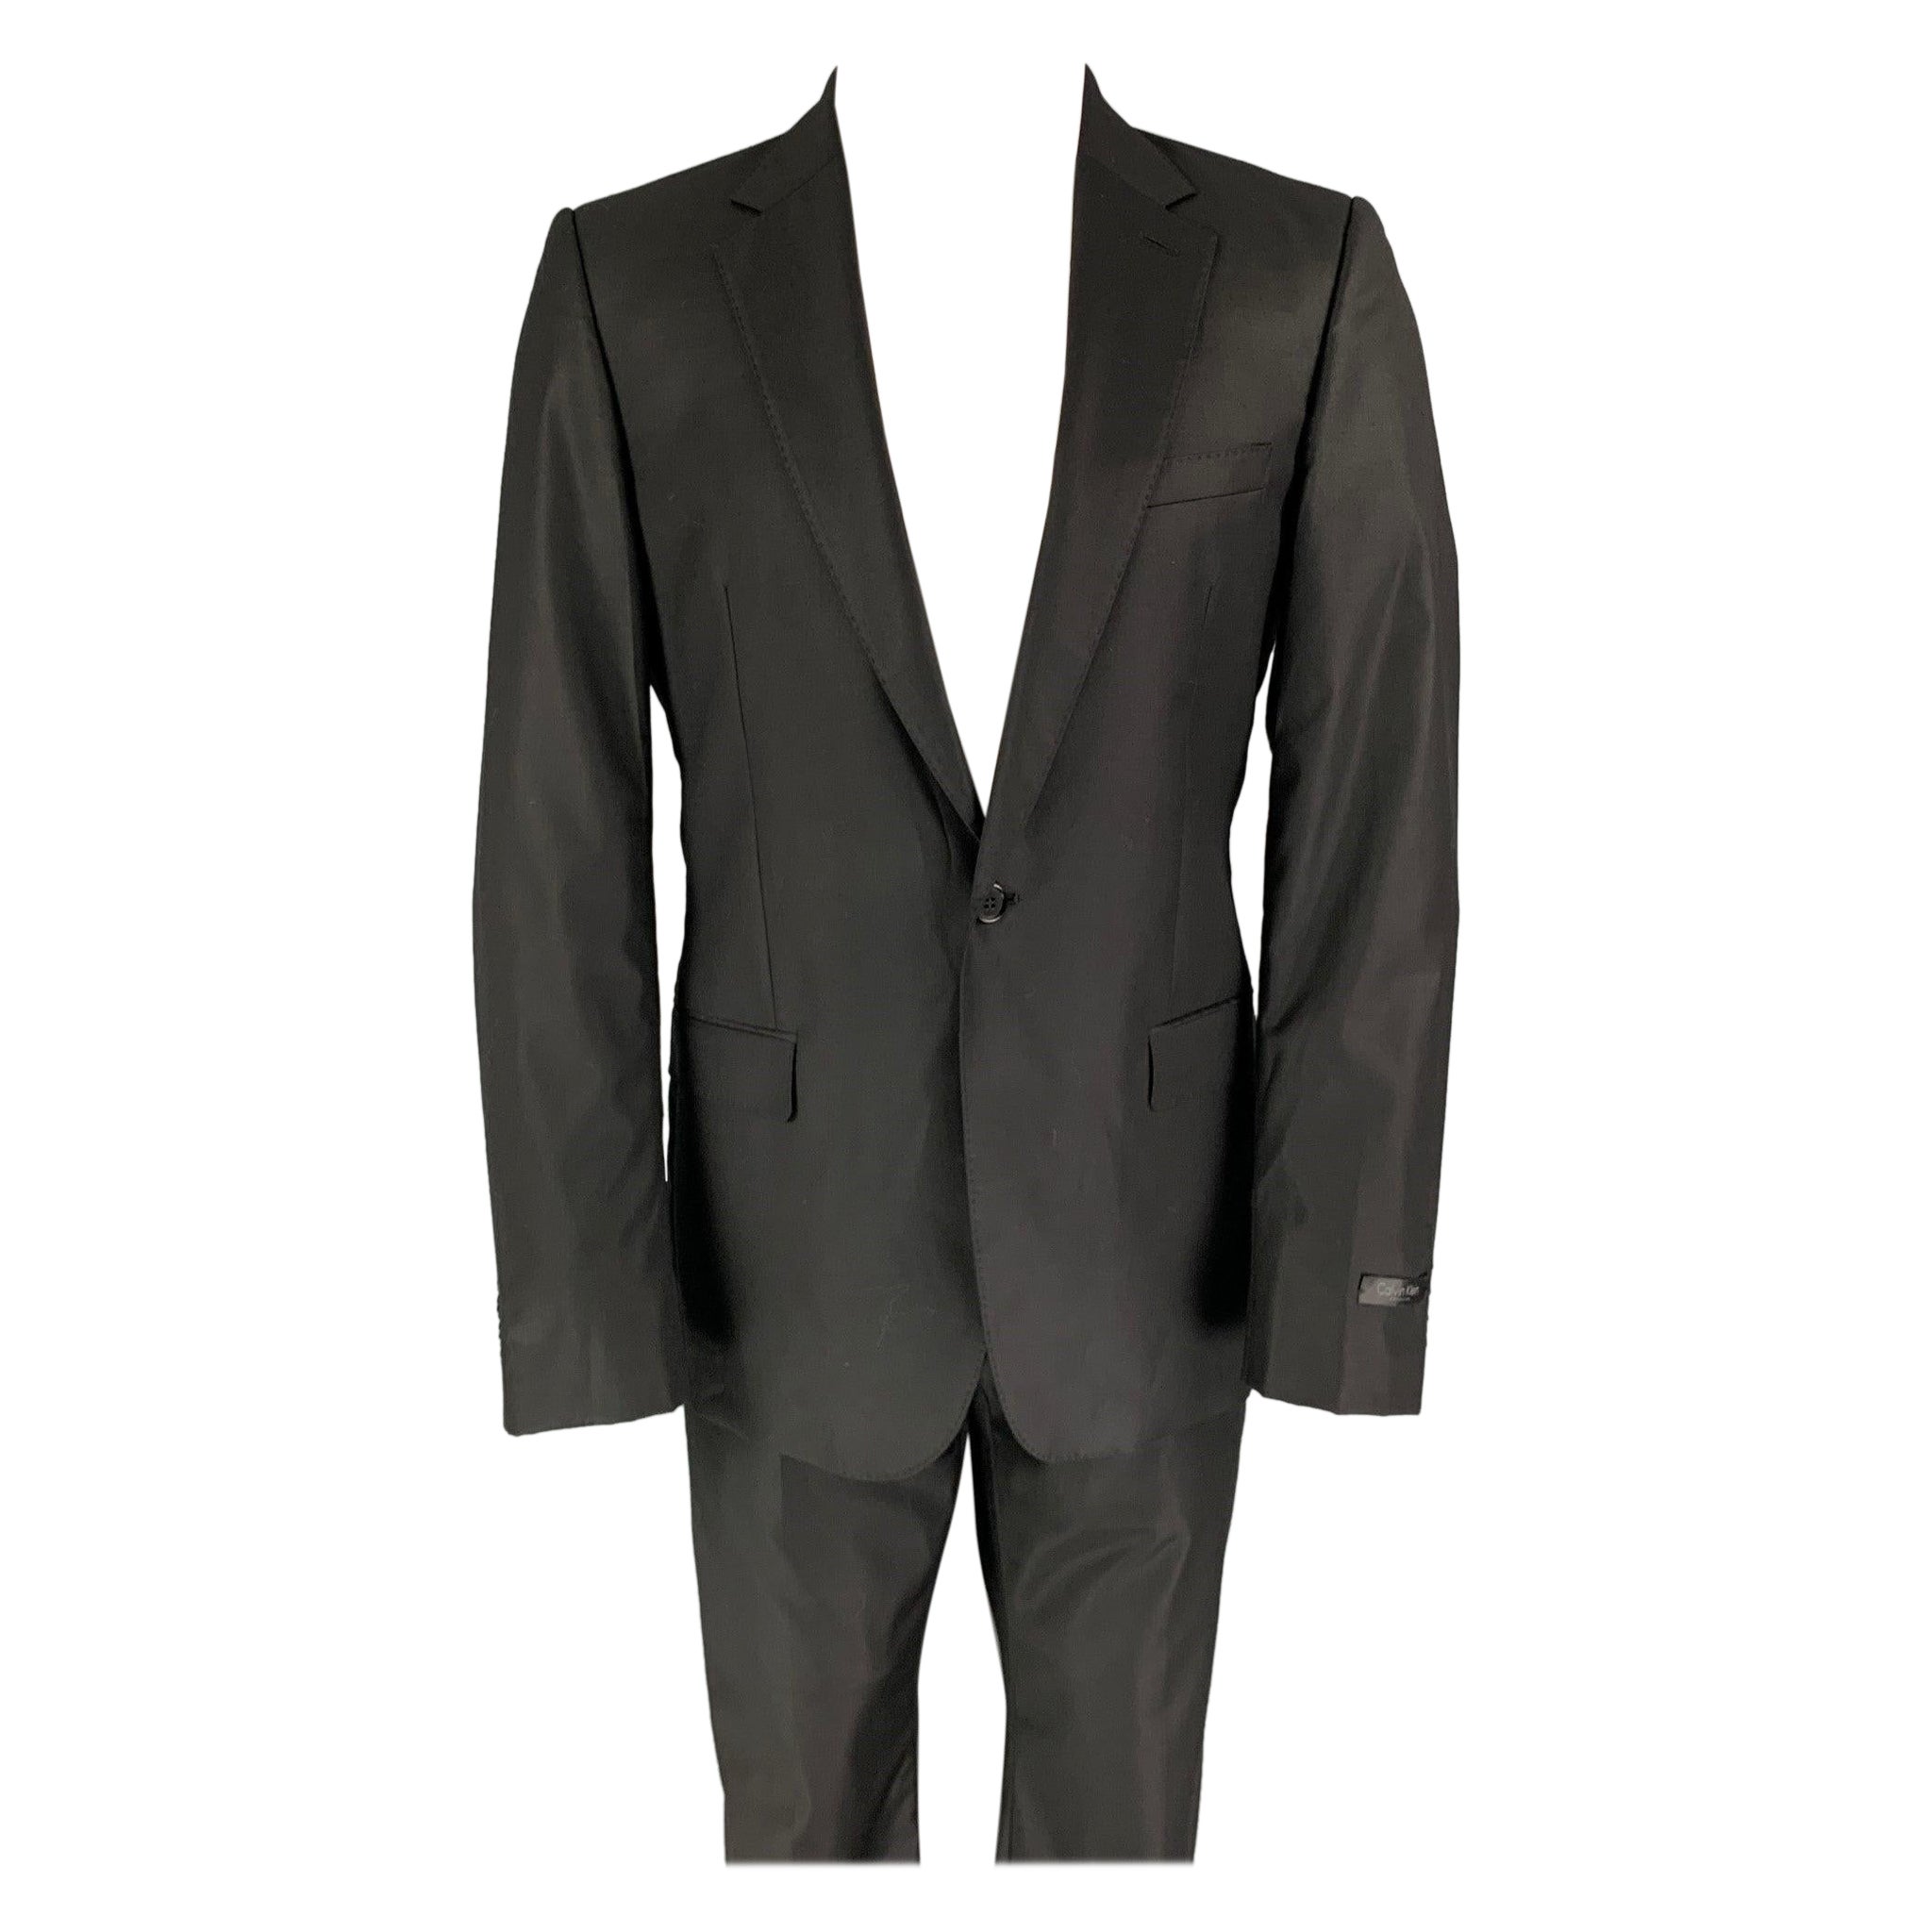 CALVIN KLEIN COLLECTION Size 38 Black Wool Notch Lapel Suit For Sale